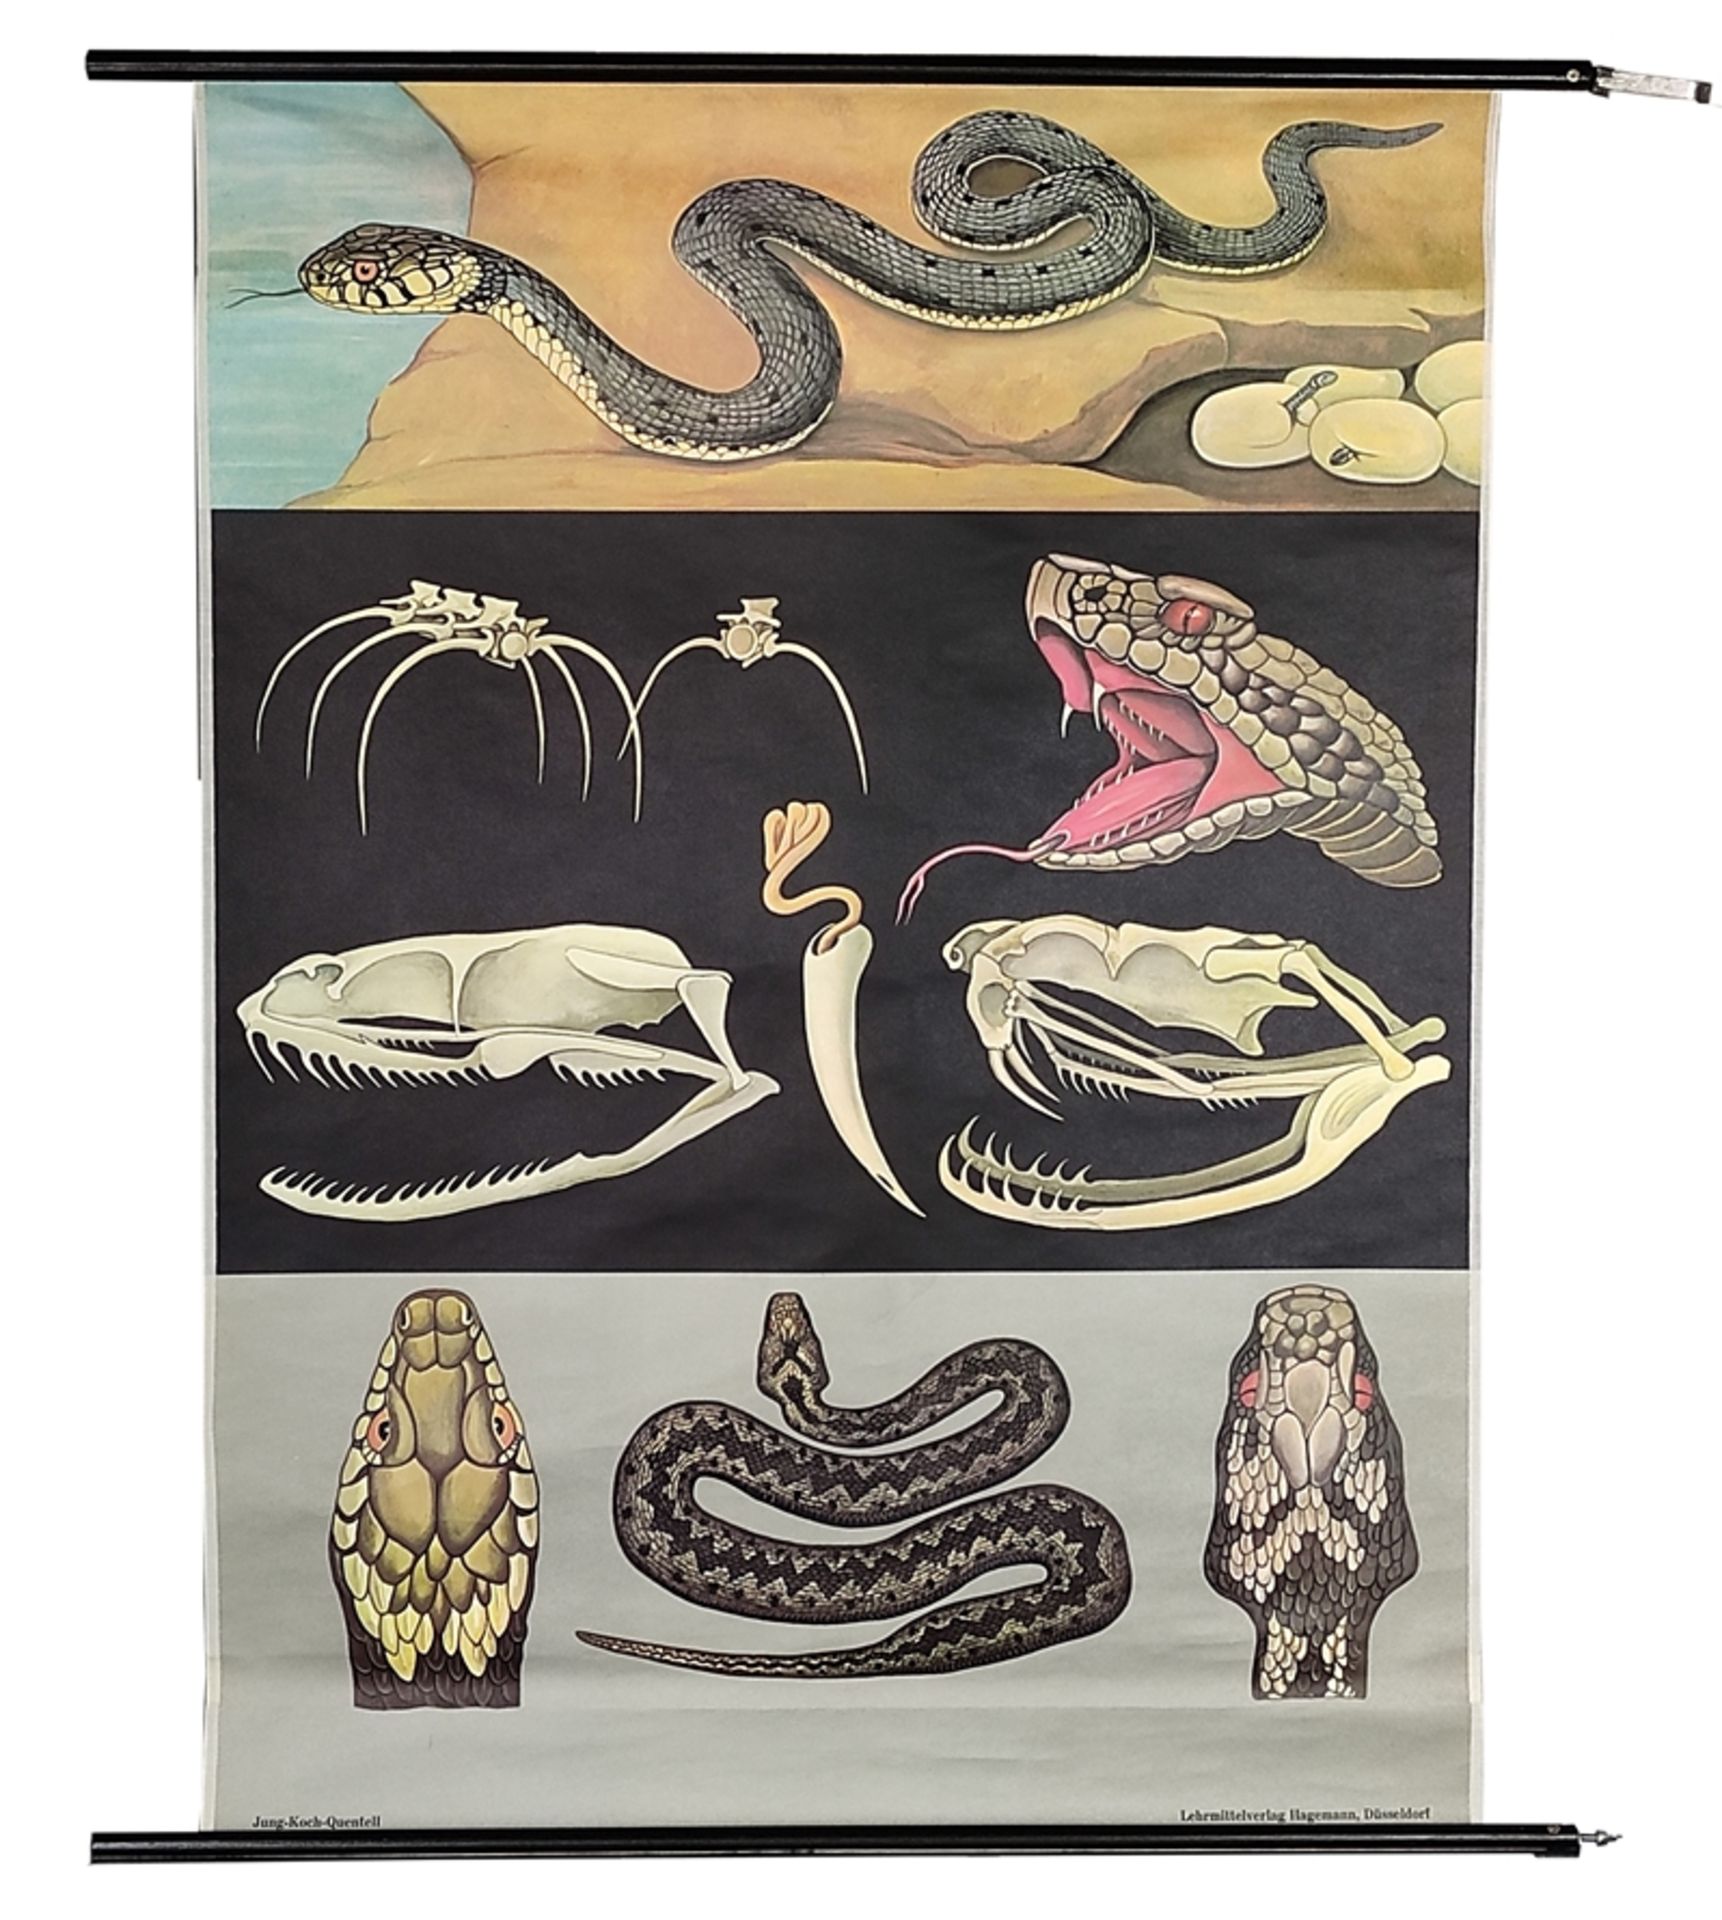 Lehrkarte/Schulwandkarte, "Kreuzotter/Viper", Biologie, Jung-Koch-Quentell, 1972, mit Aufhängung (H